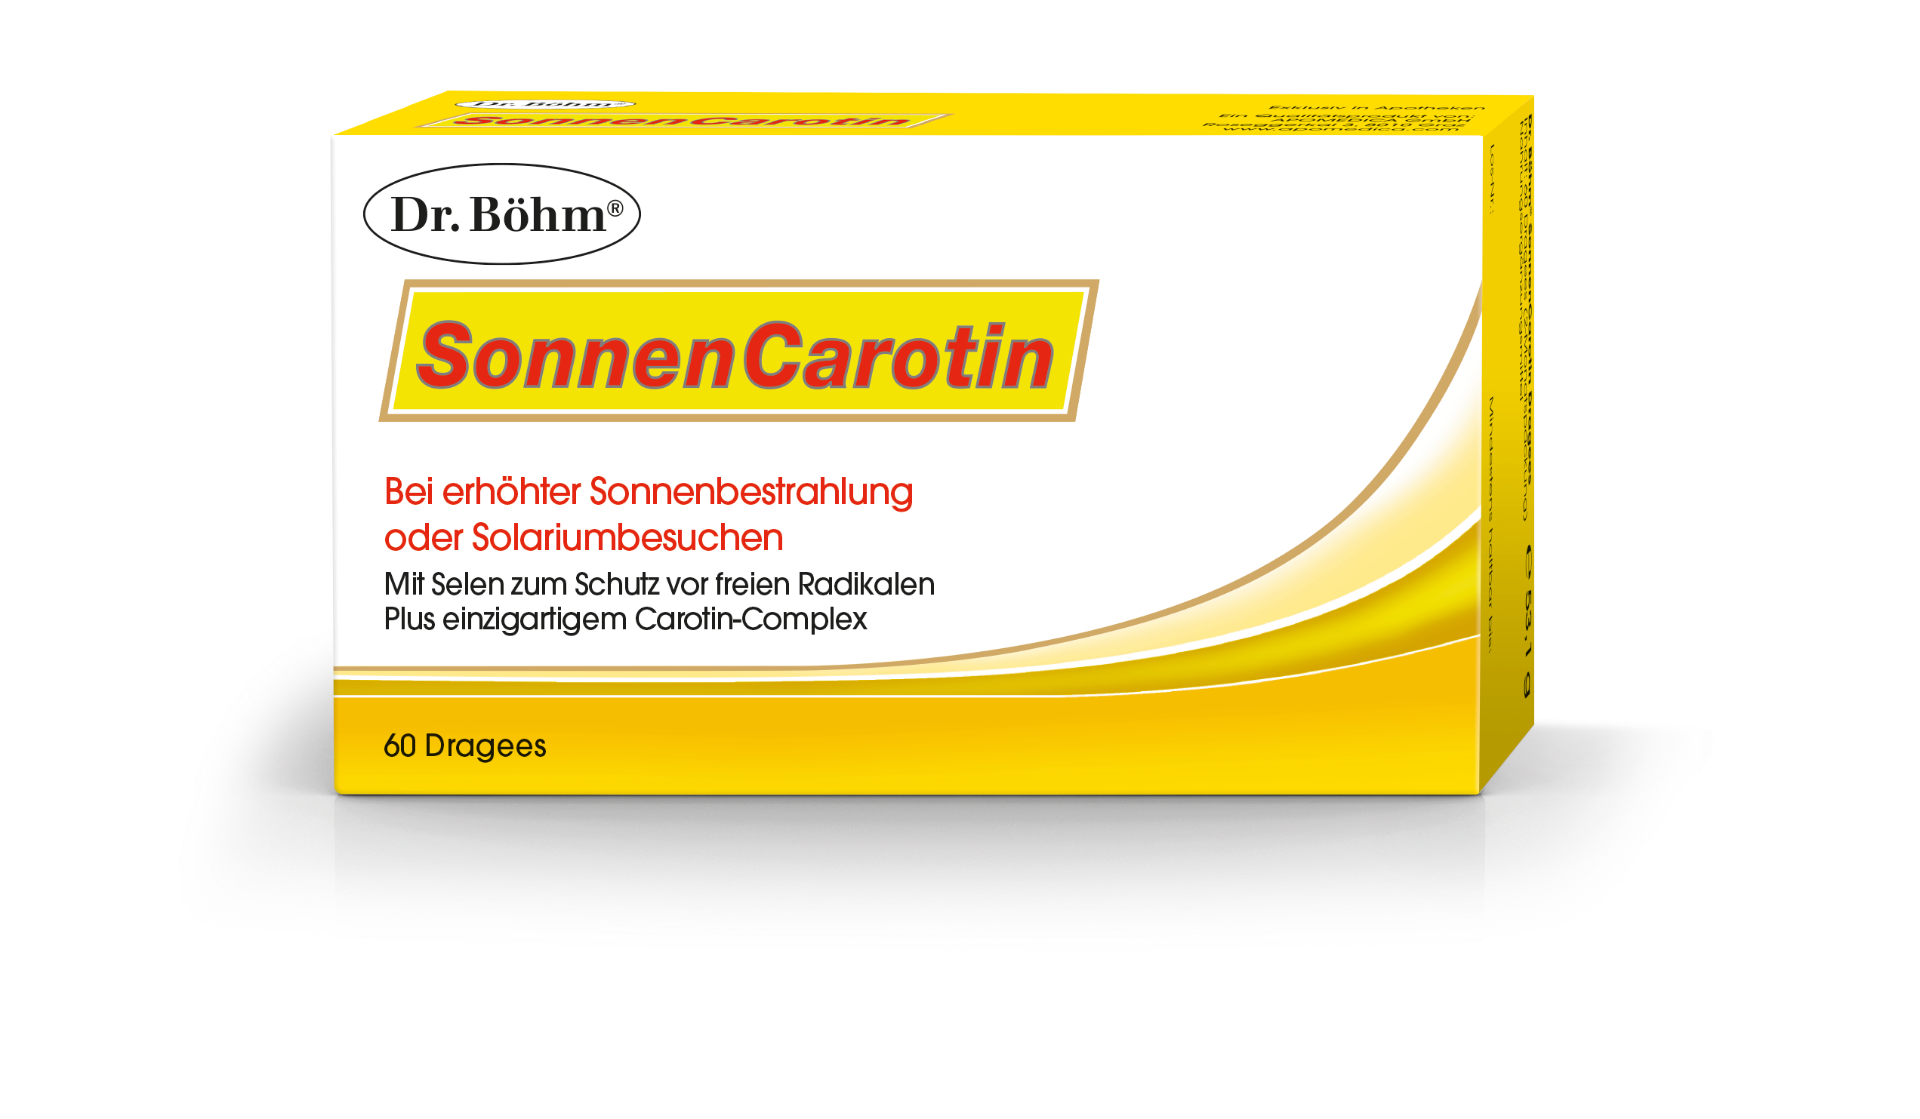 Dr. Böhm SonnenCarotin